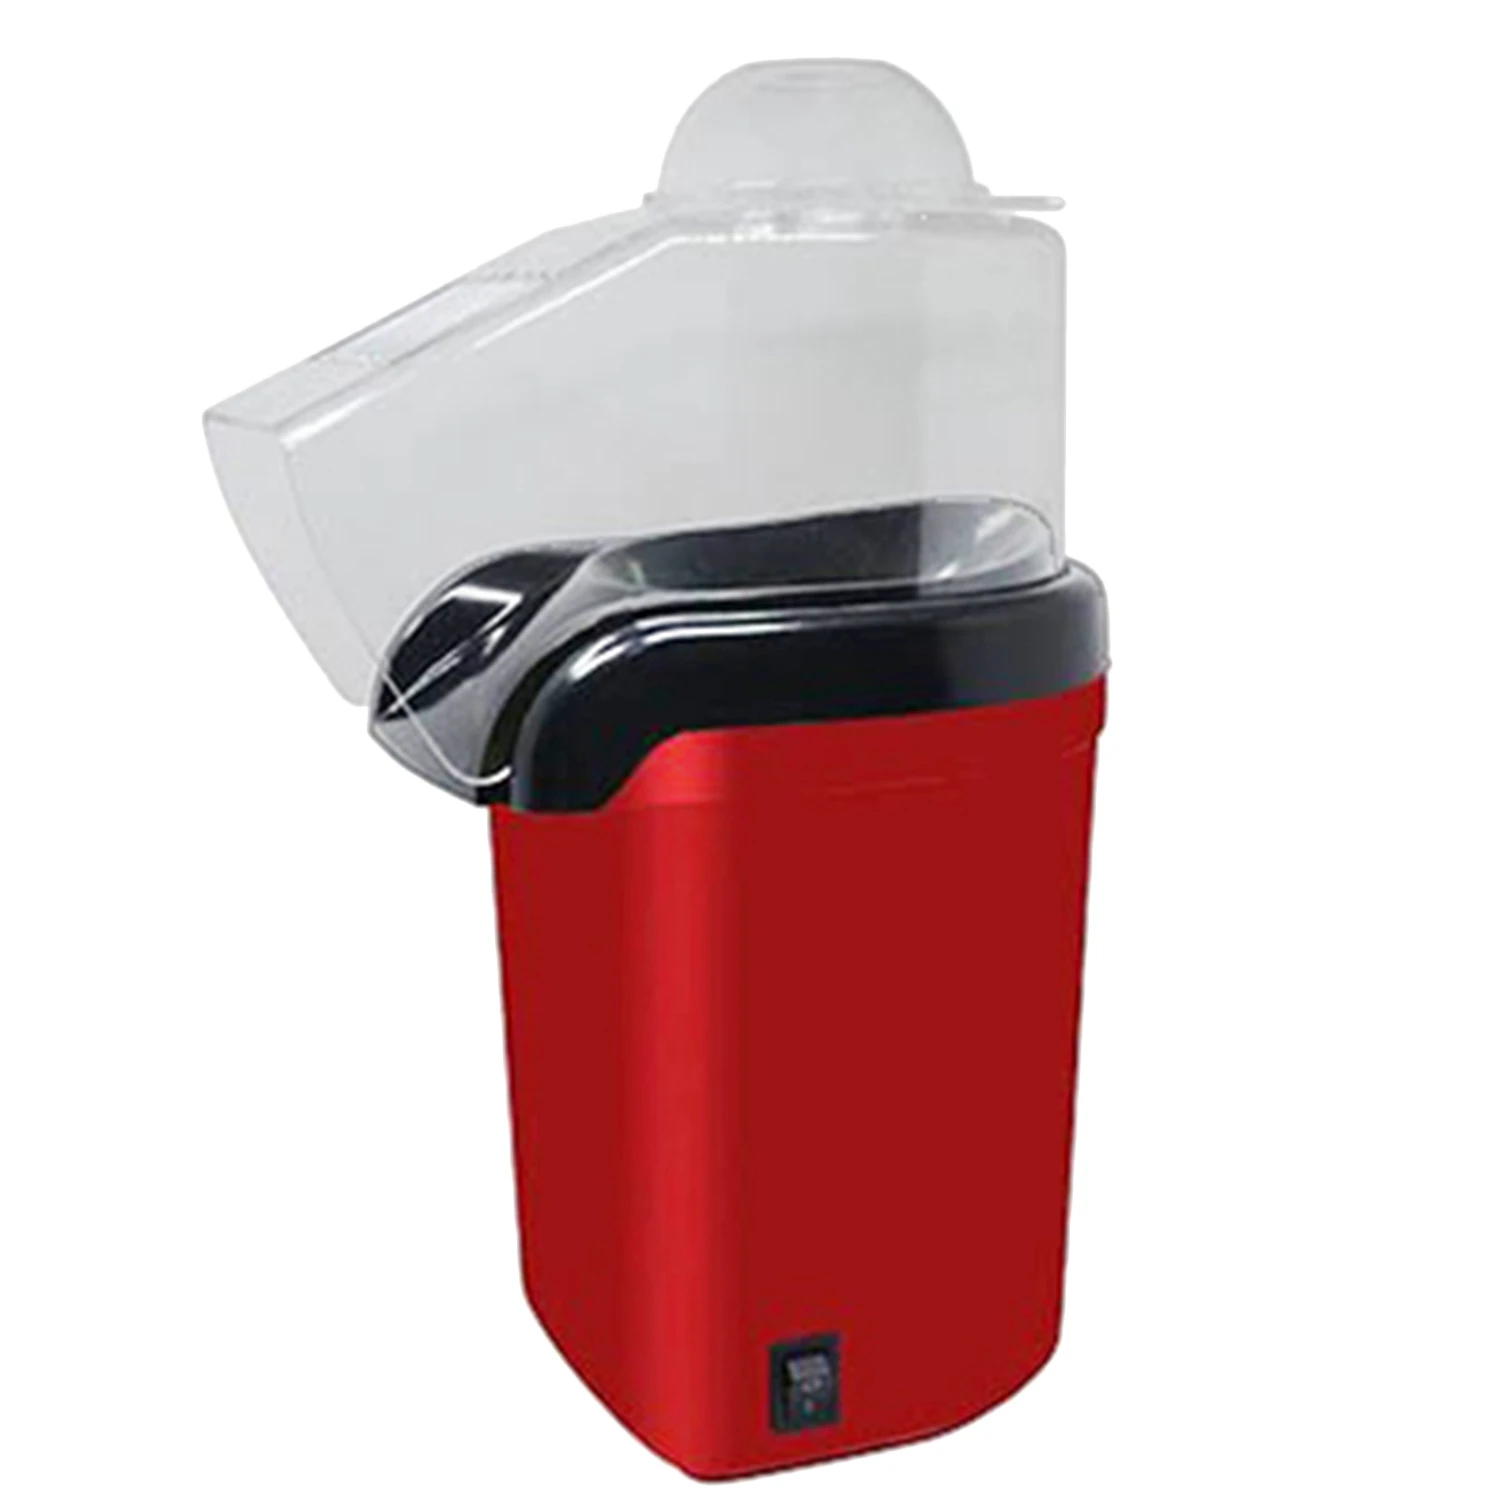 1200 W 110 V Мини Бытовая Здоровый горячего воздуха Oil-Free прибор для изготовления попкорна попкорн для дома Кухня